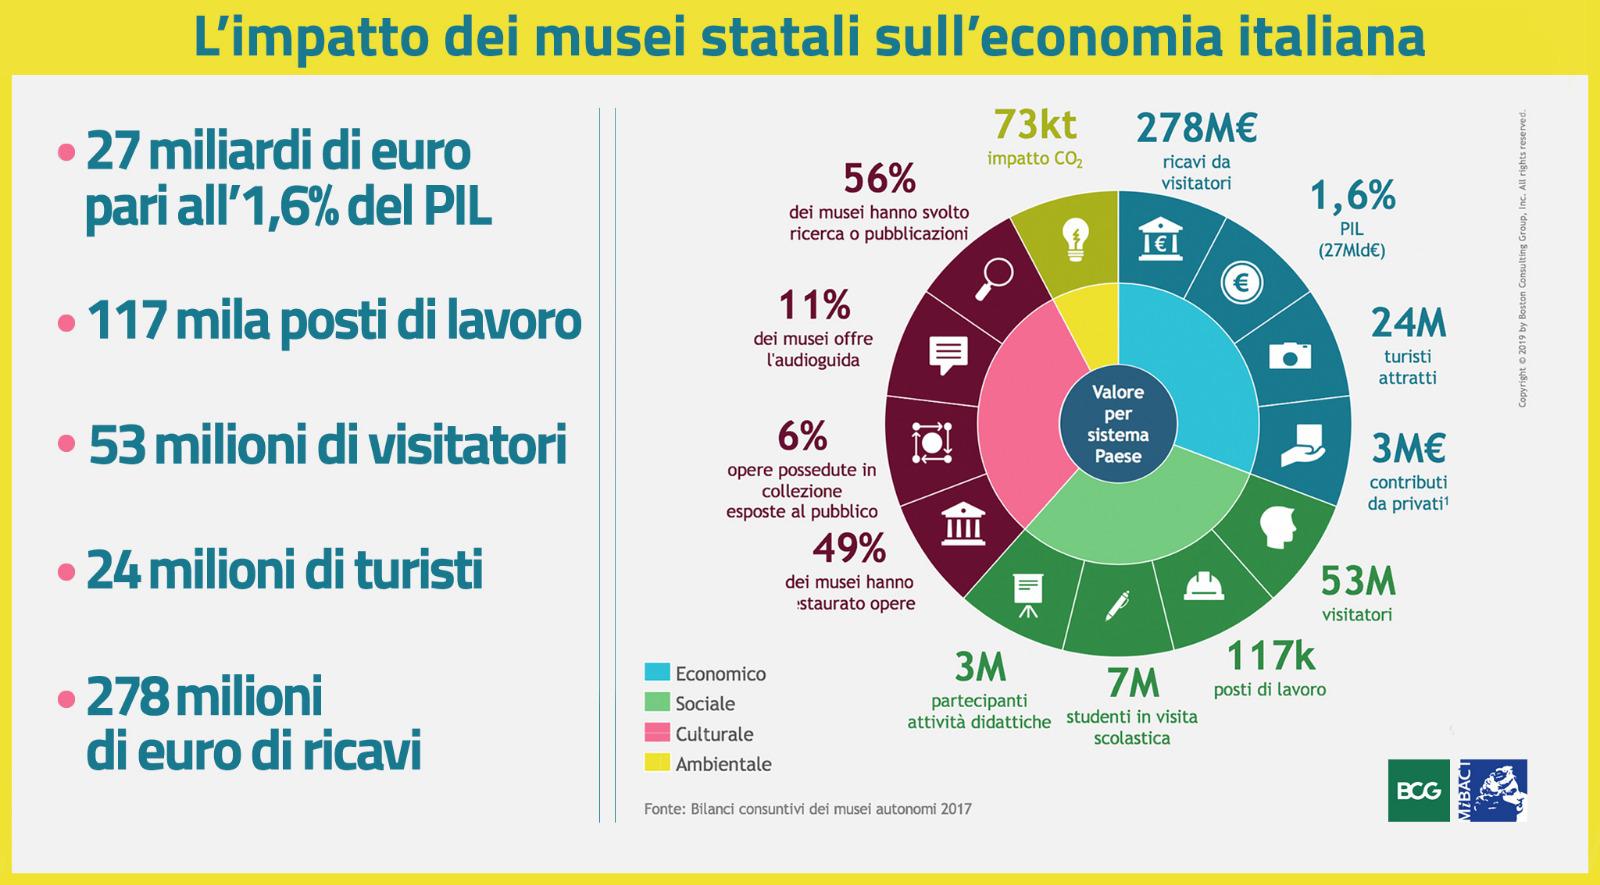 Cultura, fotografia del contributo dei musei statali in Italia: valgono l’1,6% del PIL. Franceschini: investire in cultura è leva strategica per la crescita del Paese